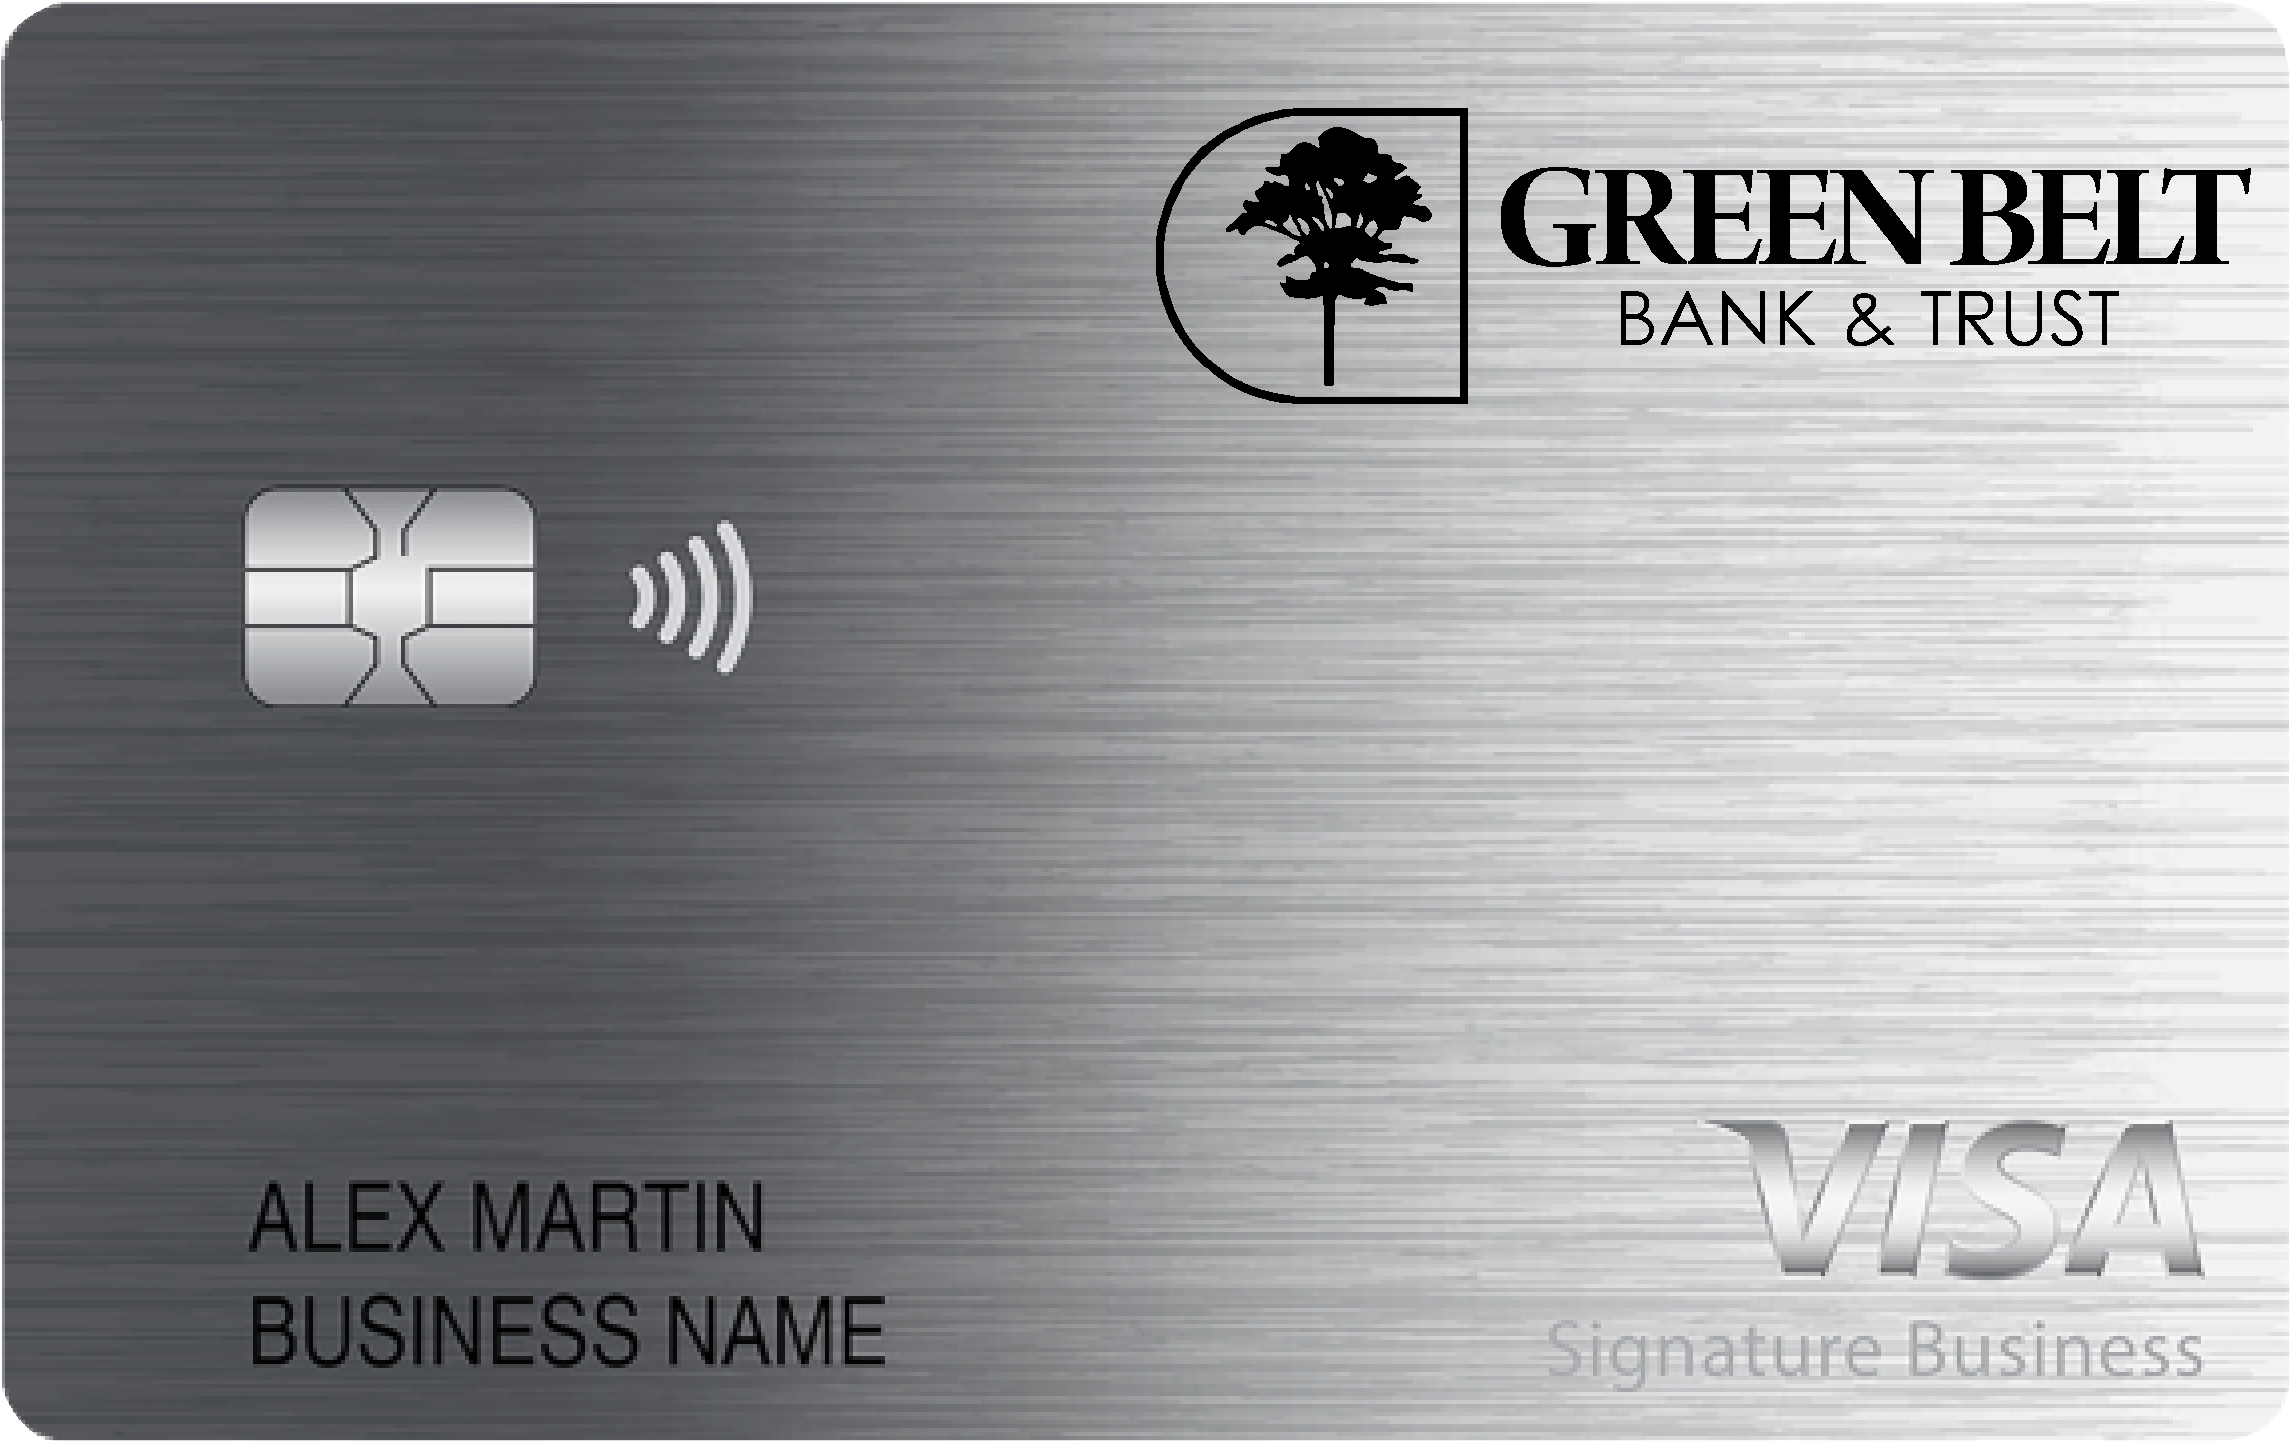 Green Belt Bank & Trust Smart Business Rewards Card